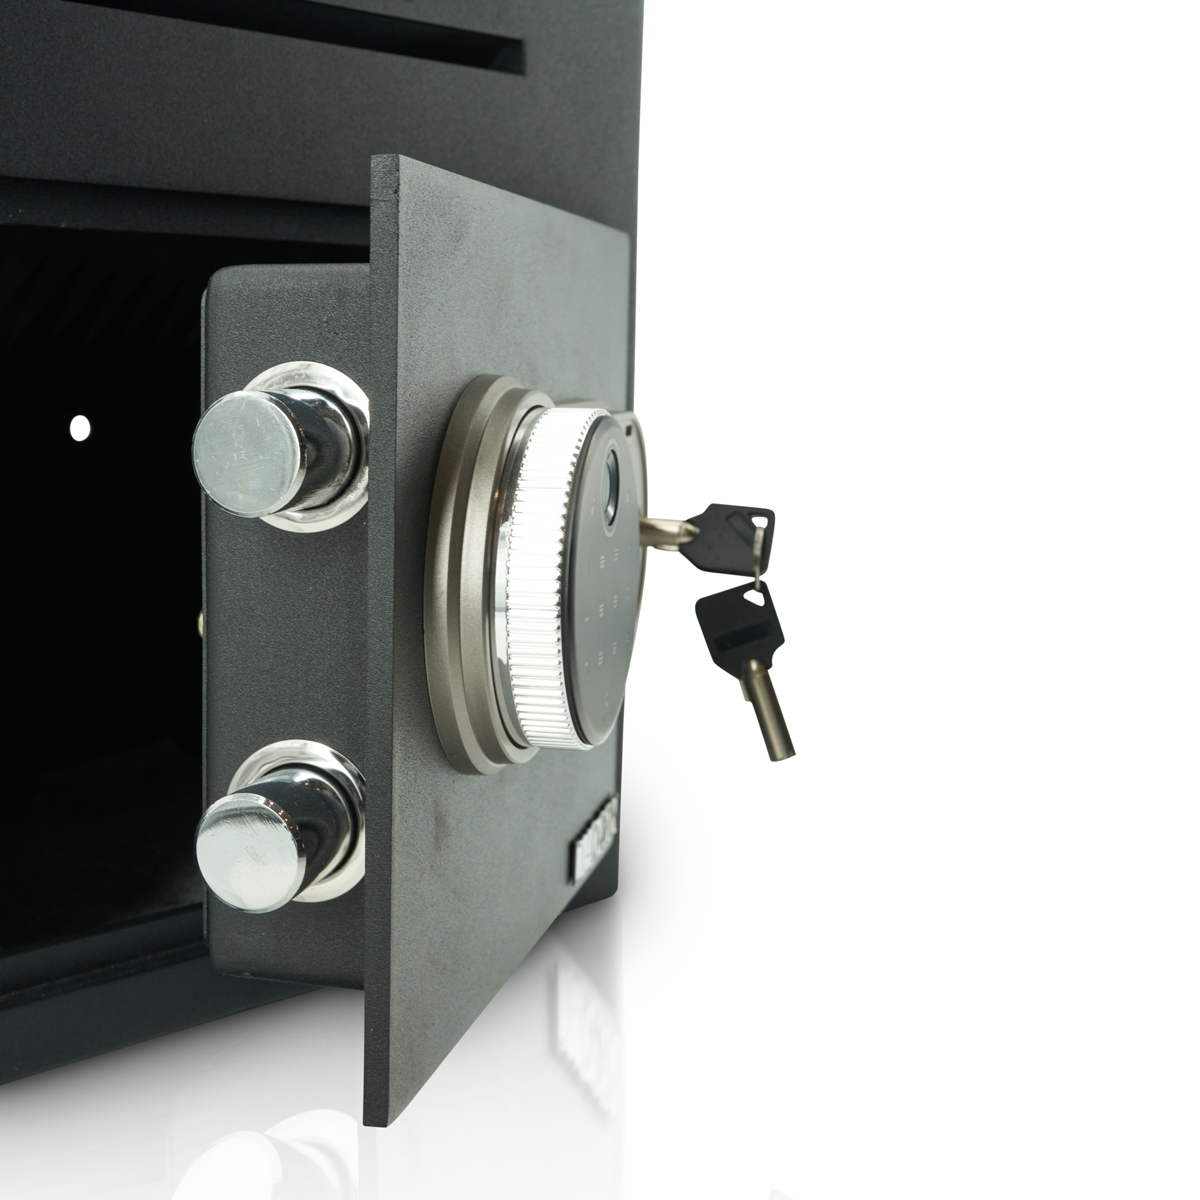 Caja fuerte de depósito con cerradura de código PIN con huella dactilar | Escáner de huellas dactilares | Gastronomía